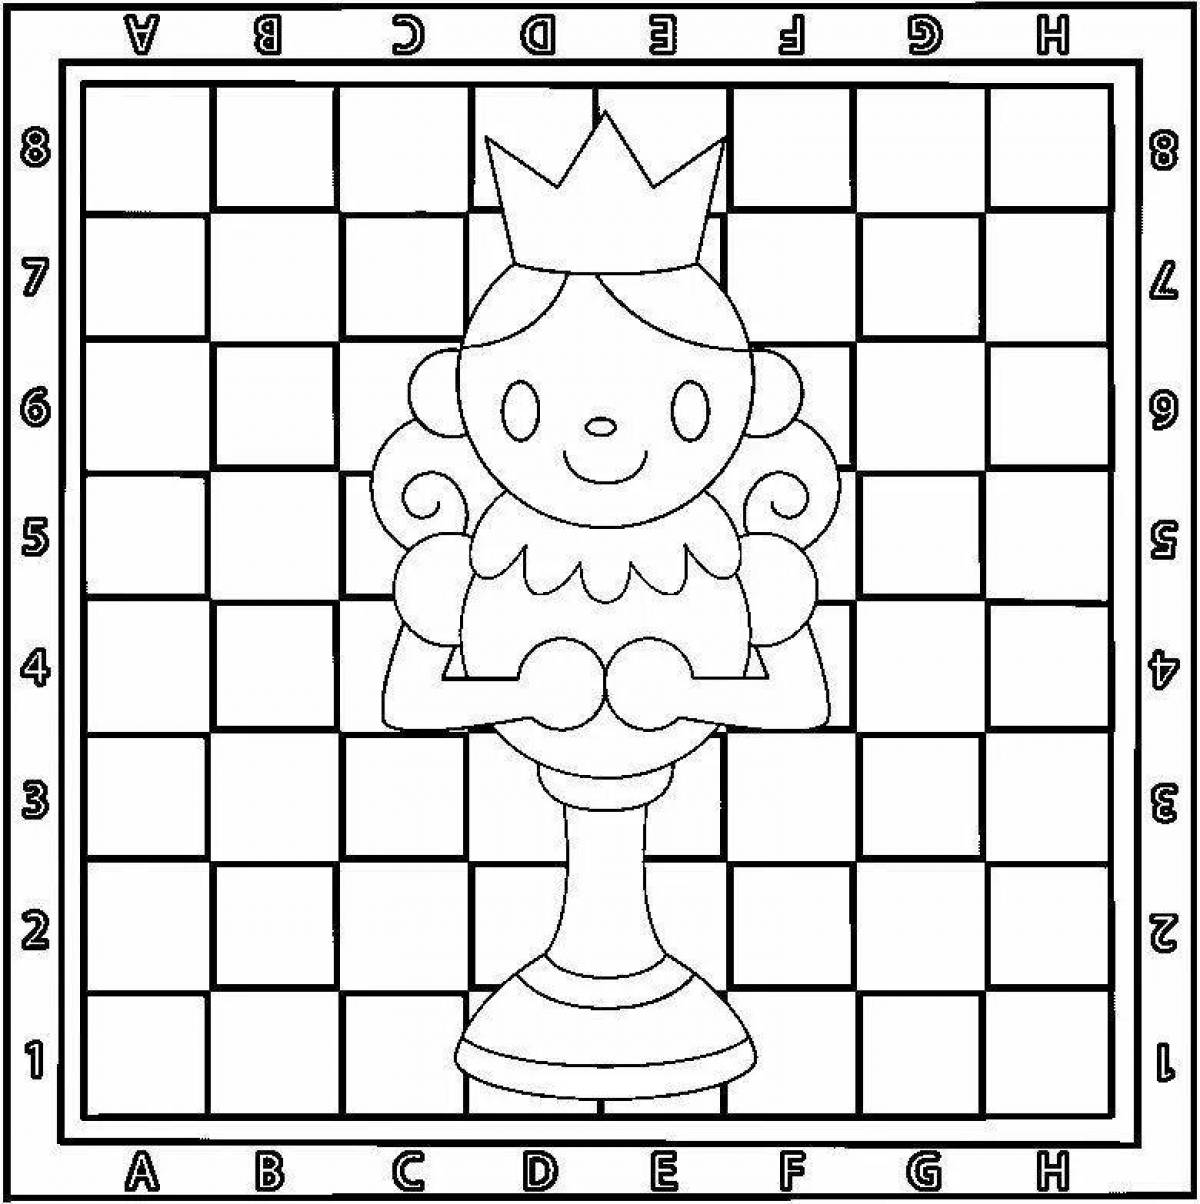 Children's chessboard #10